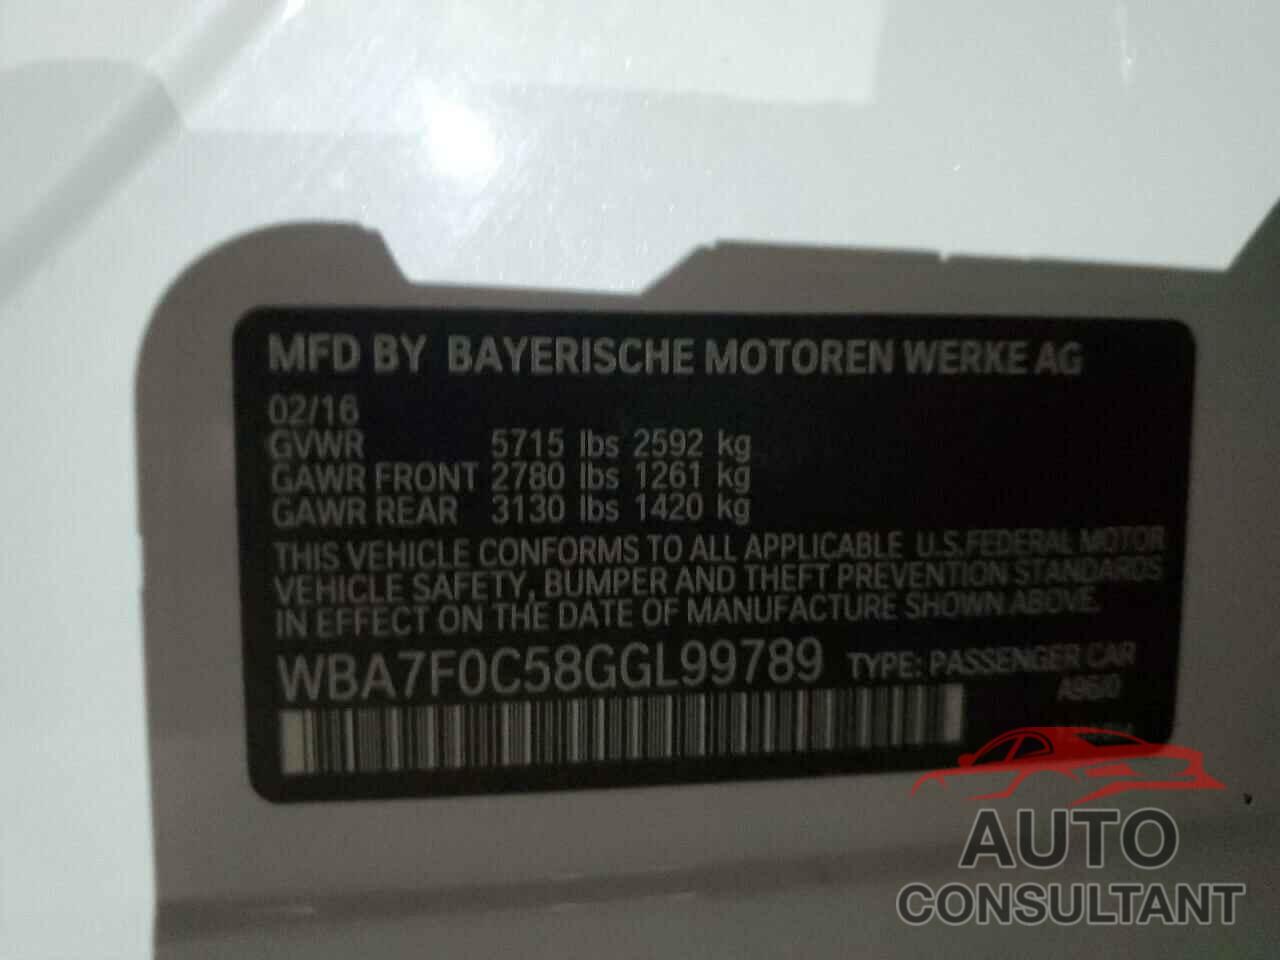 BMW 7 SERIES 2016 - WBA7F0C58GGL99789